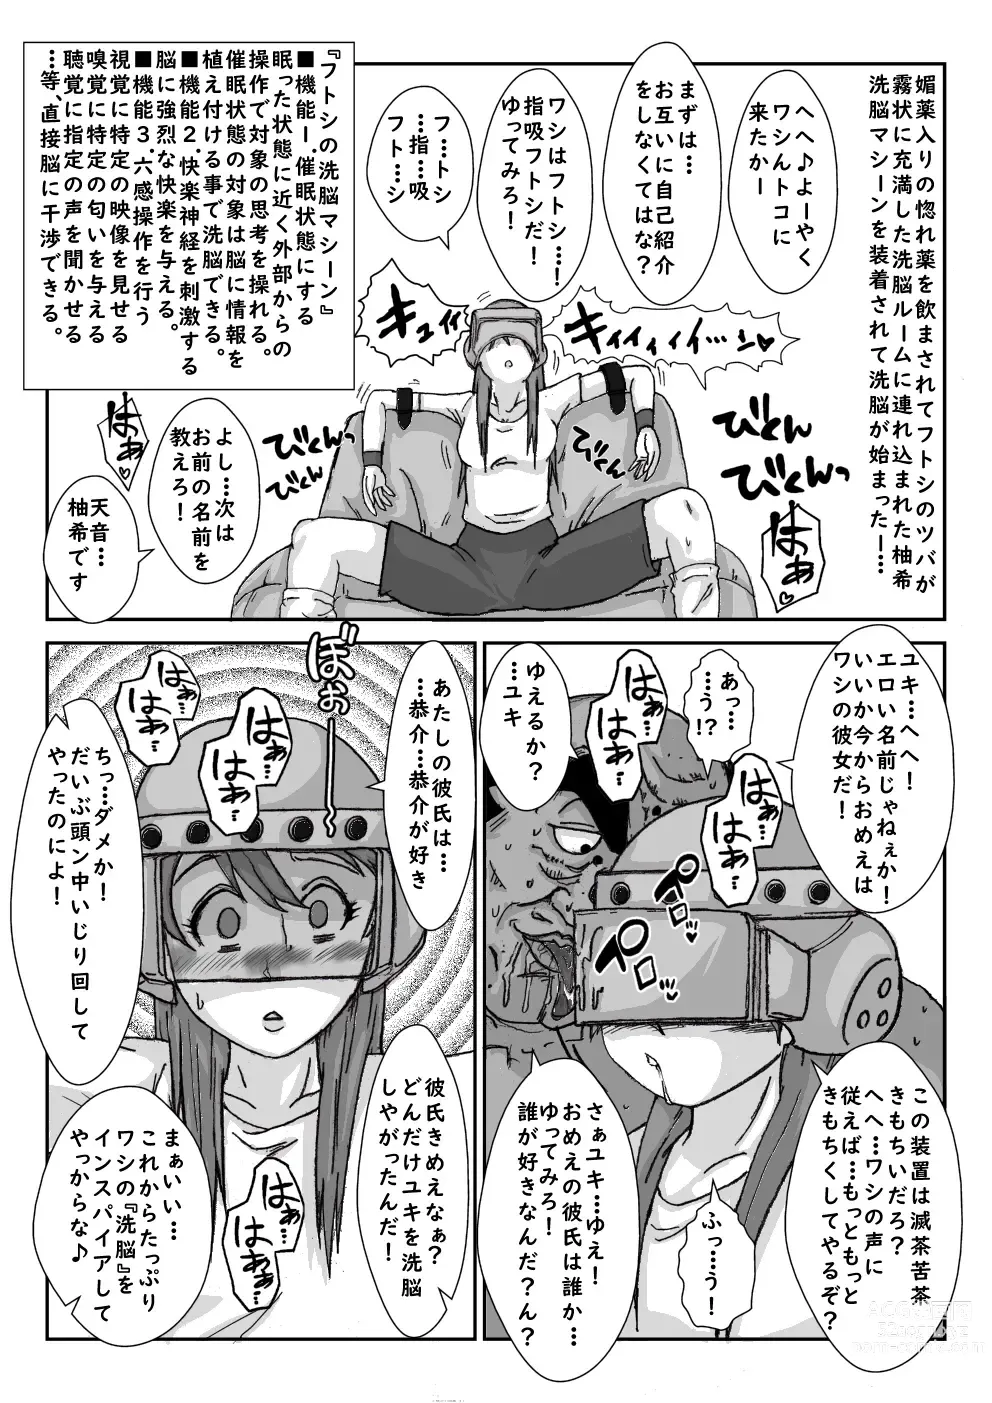 Page 11 of doujinshi Sennou